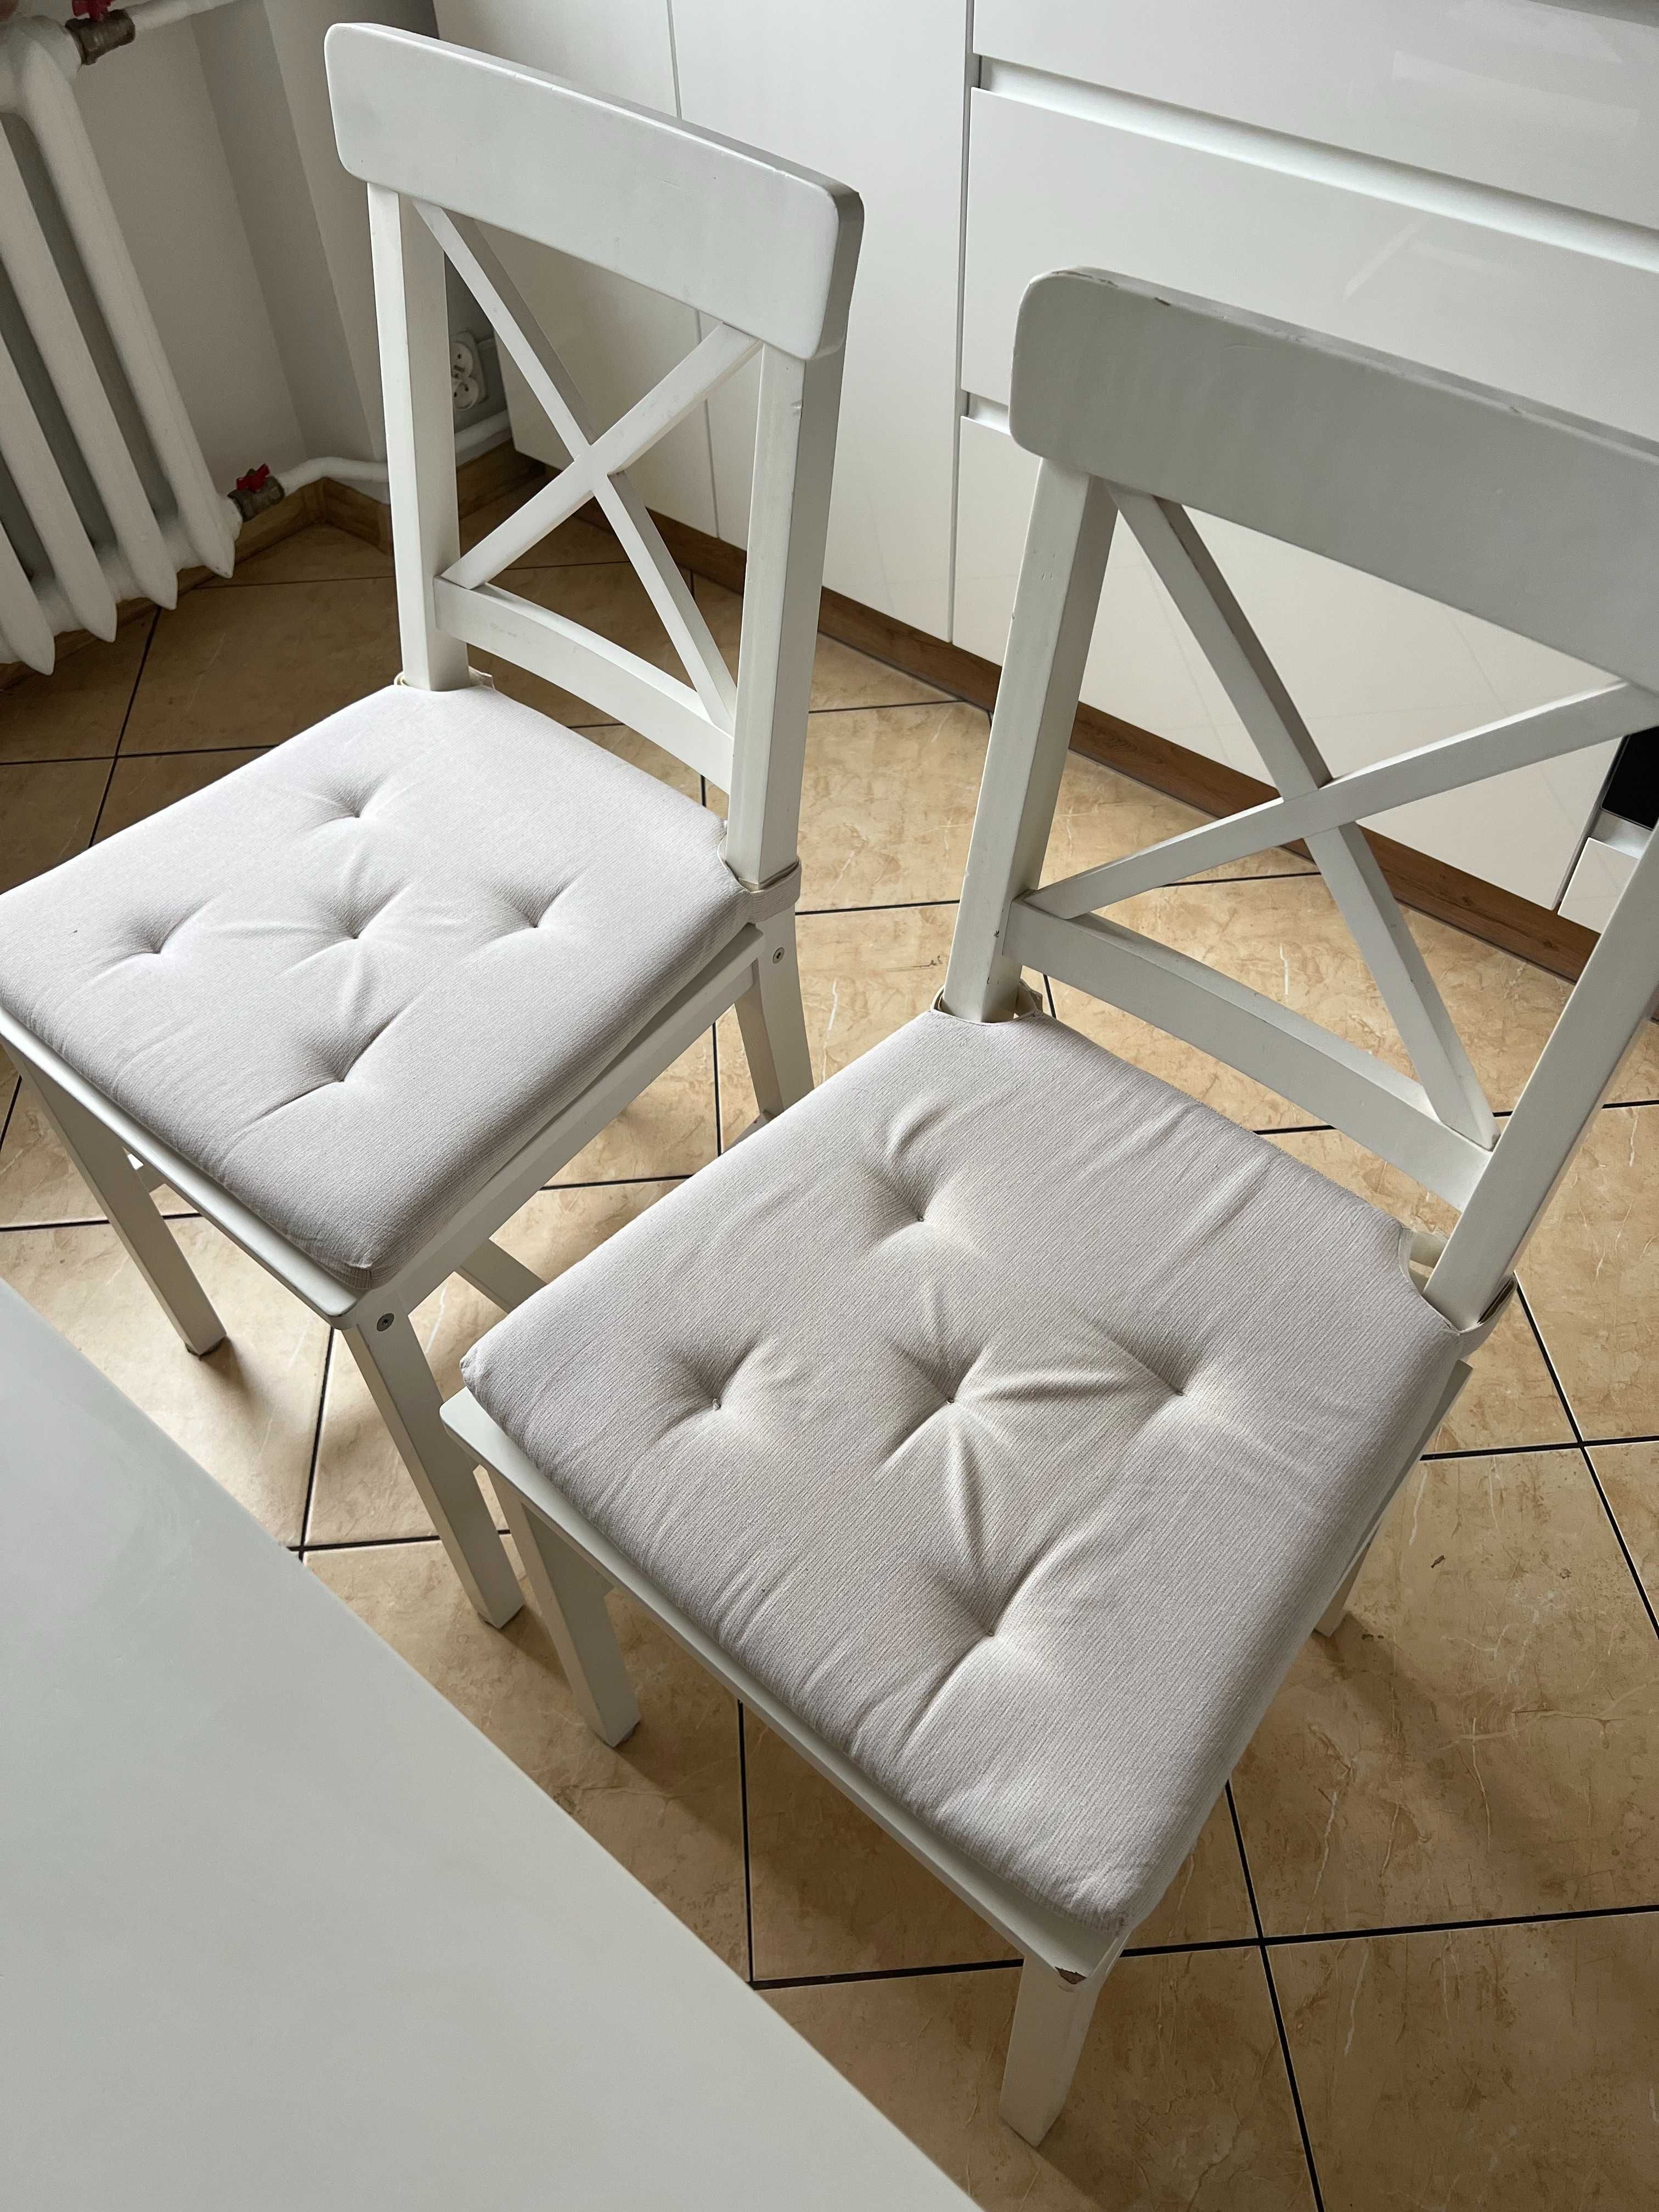 Biały stół kuchenny z krzesłami